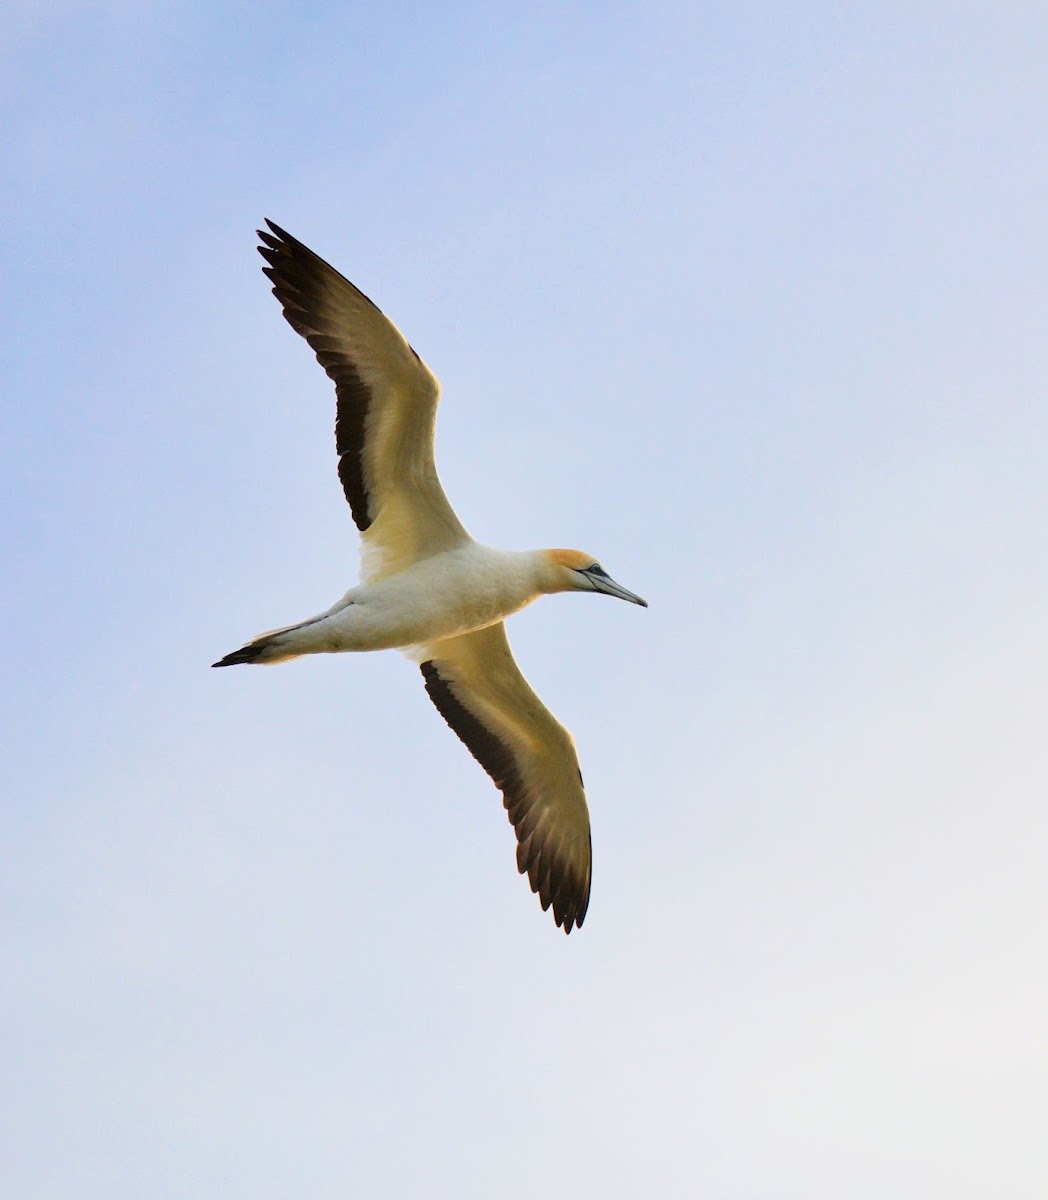 Gannet Bird